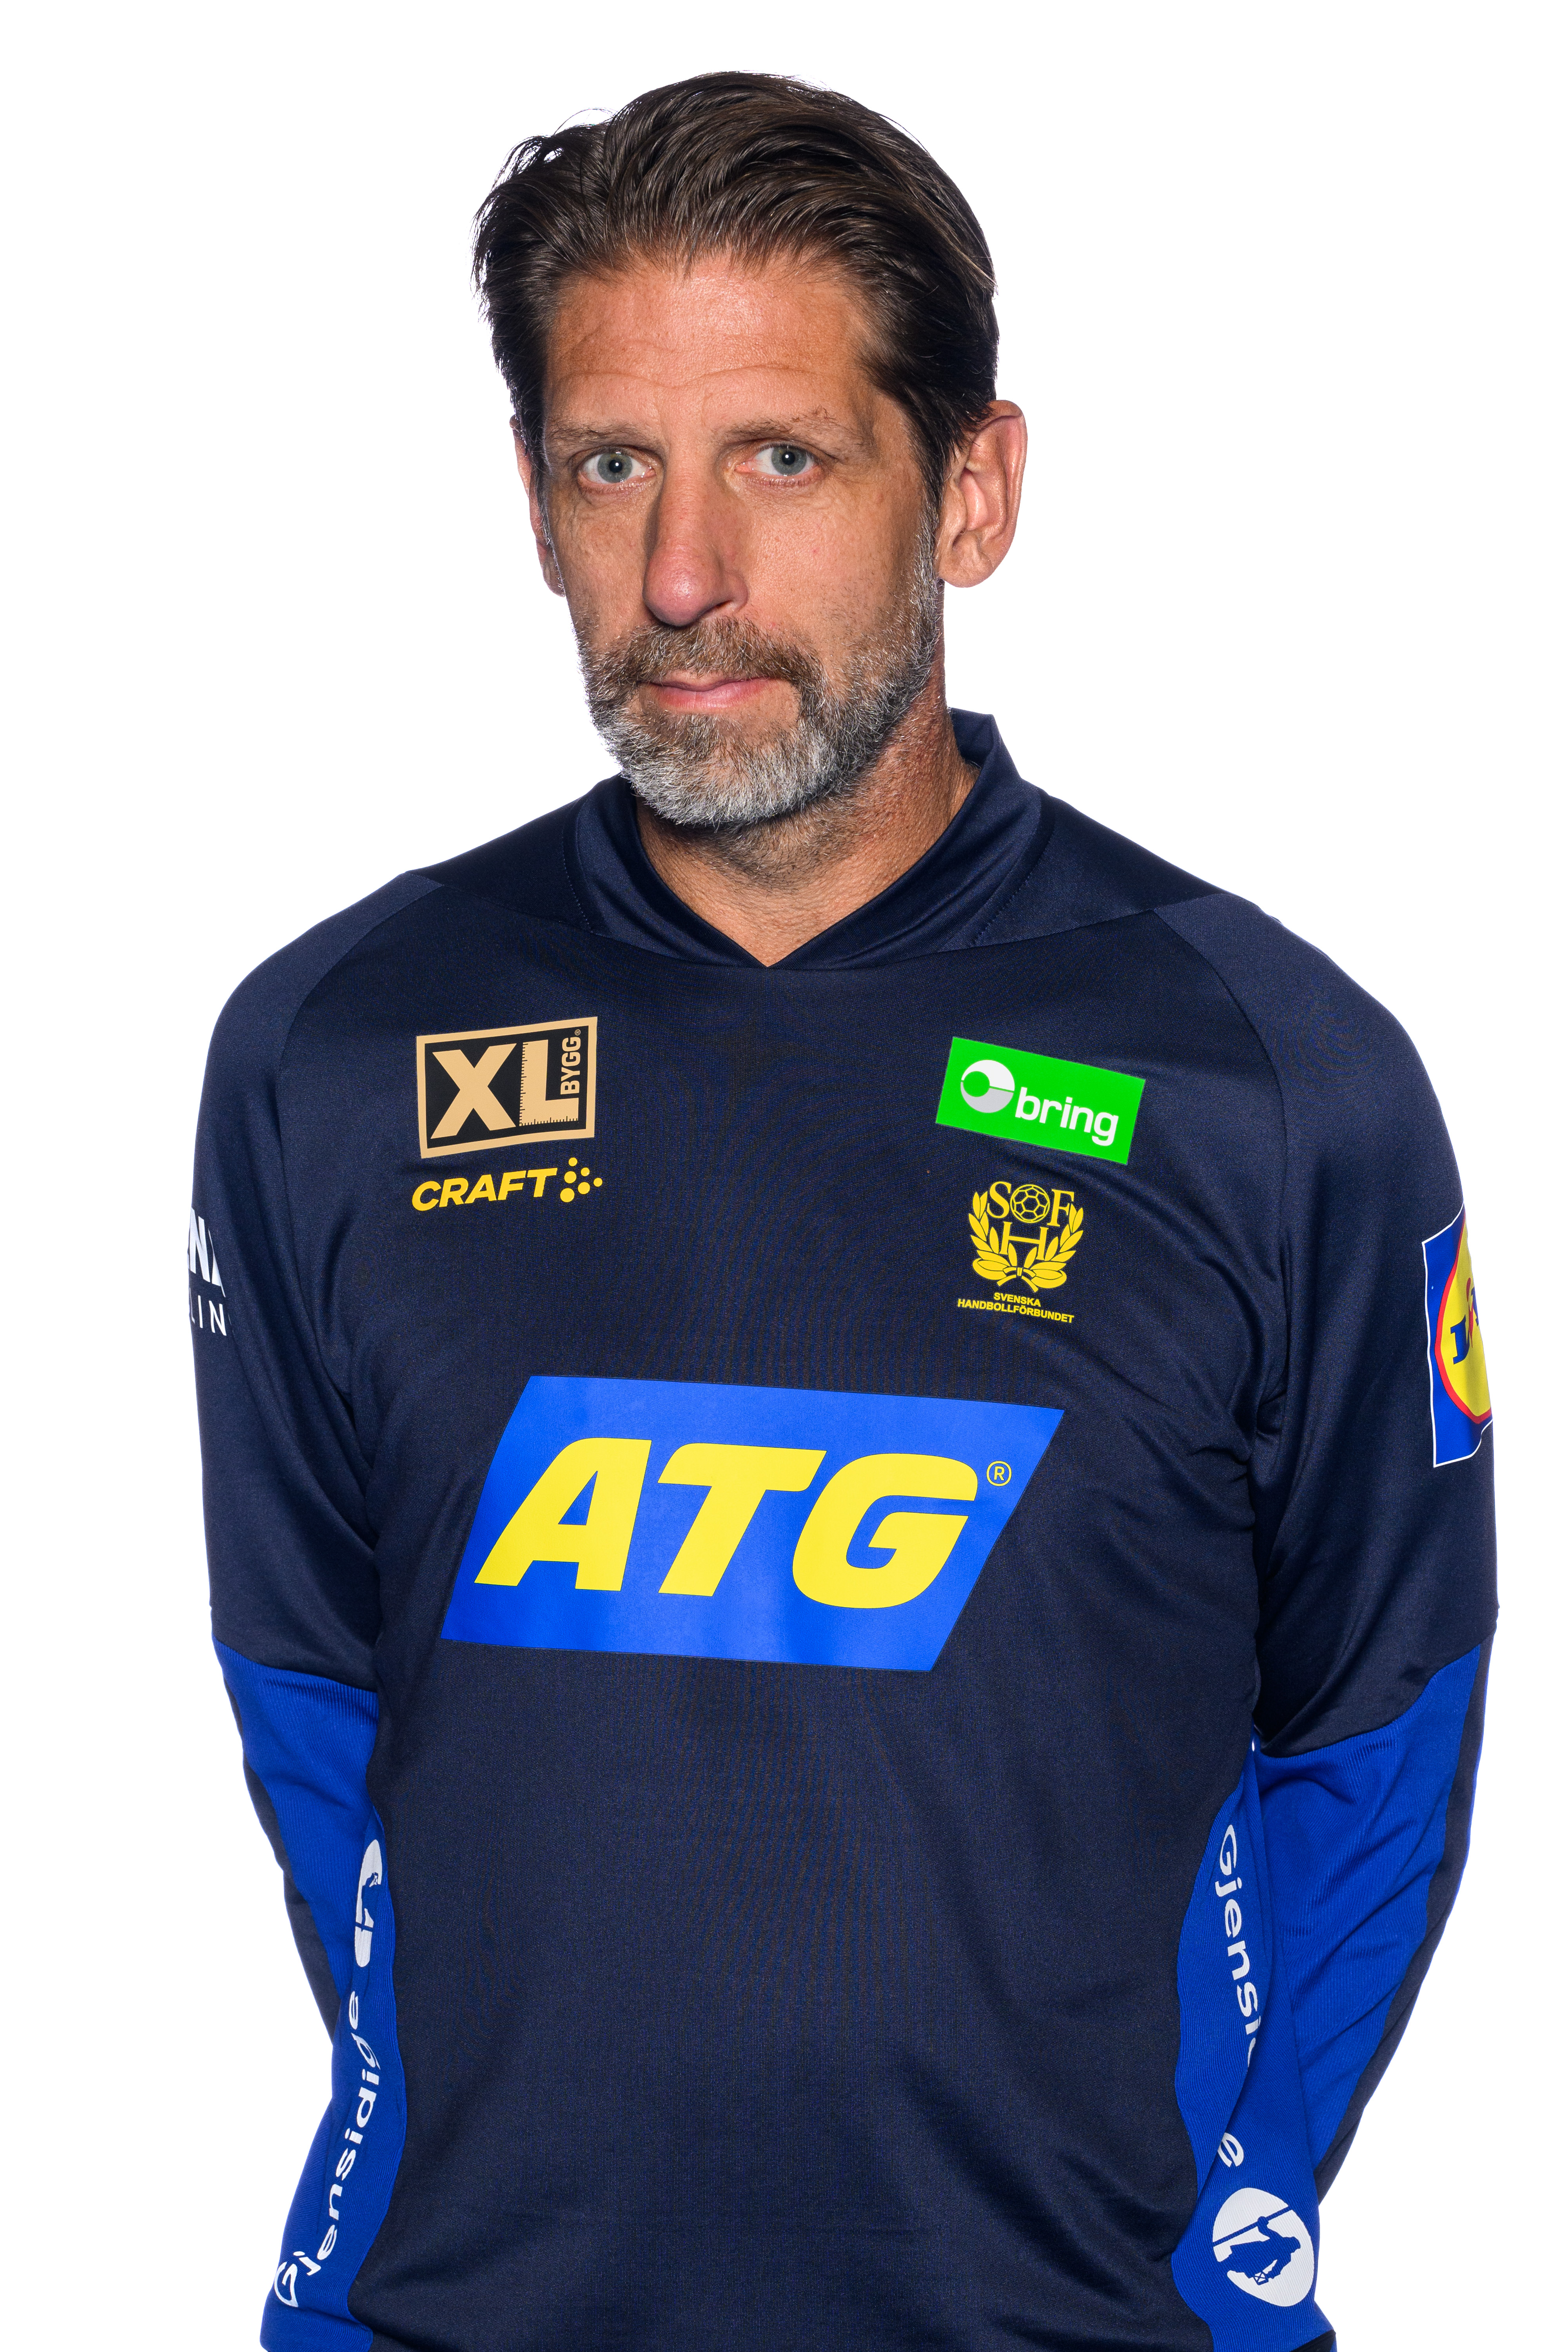 Tomas Axnér Head Coach